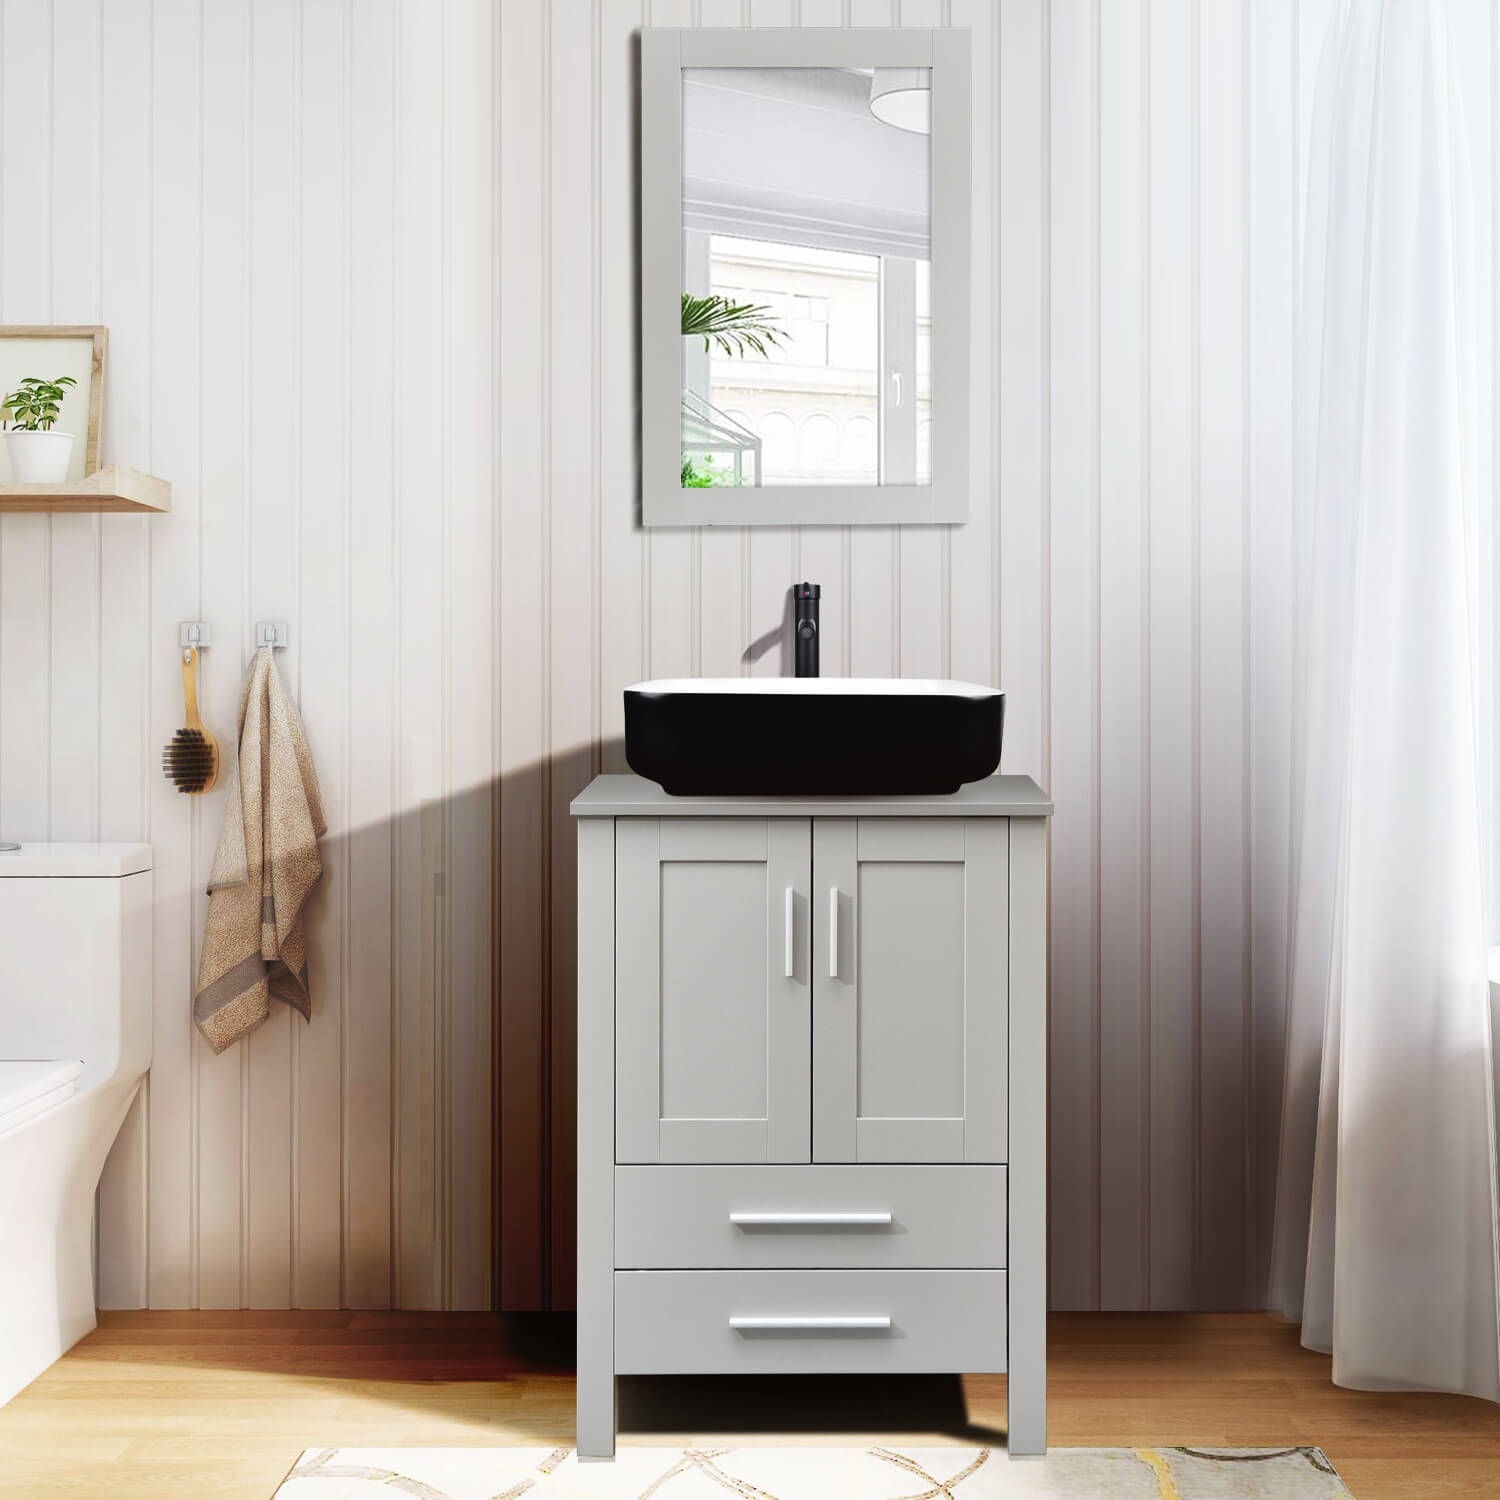 Elecwish gray wood bathroom vanity with black ceramic sink HW1124 in bathroom